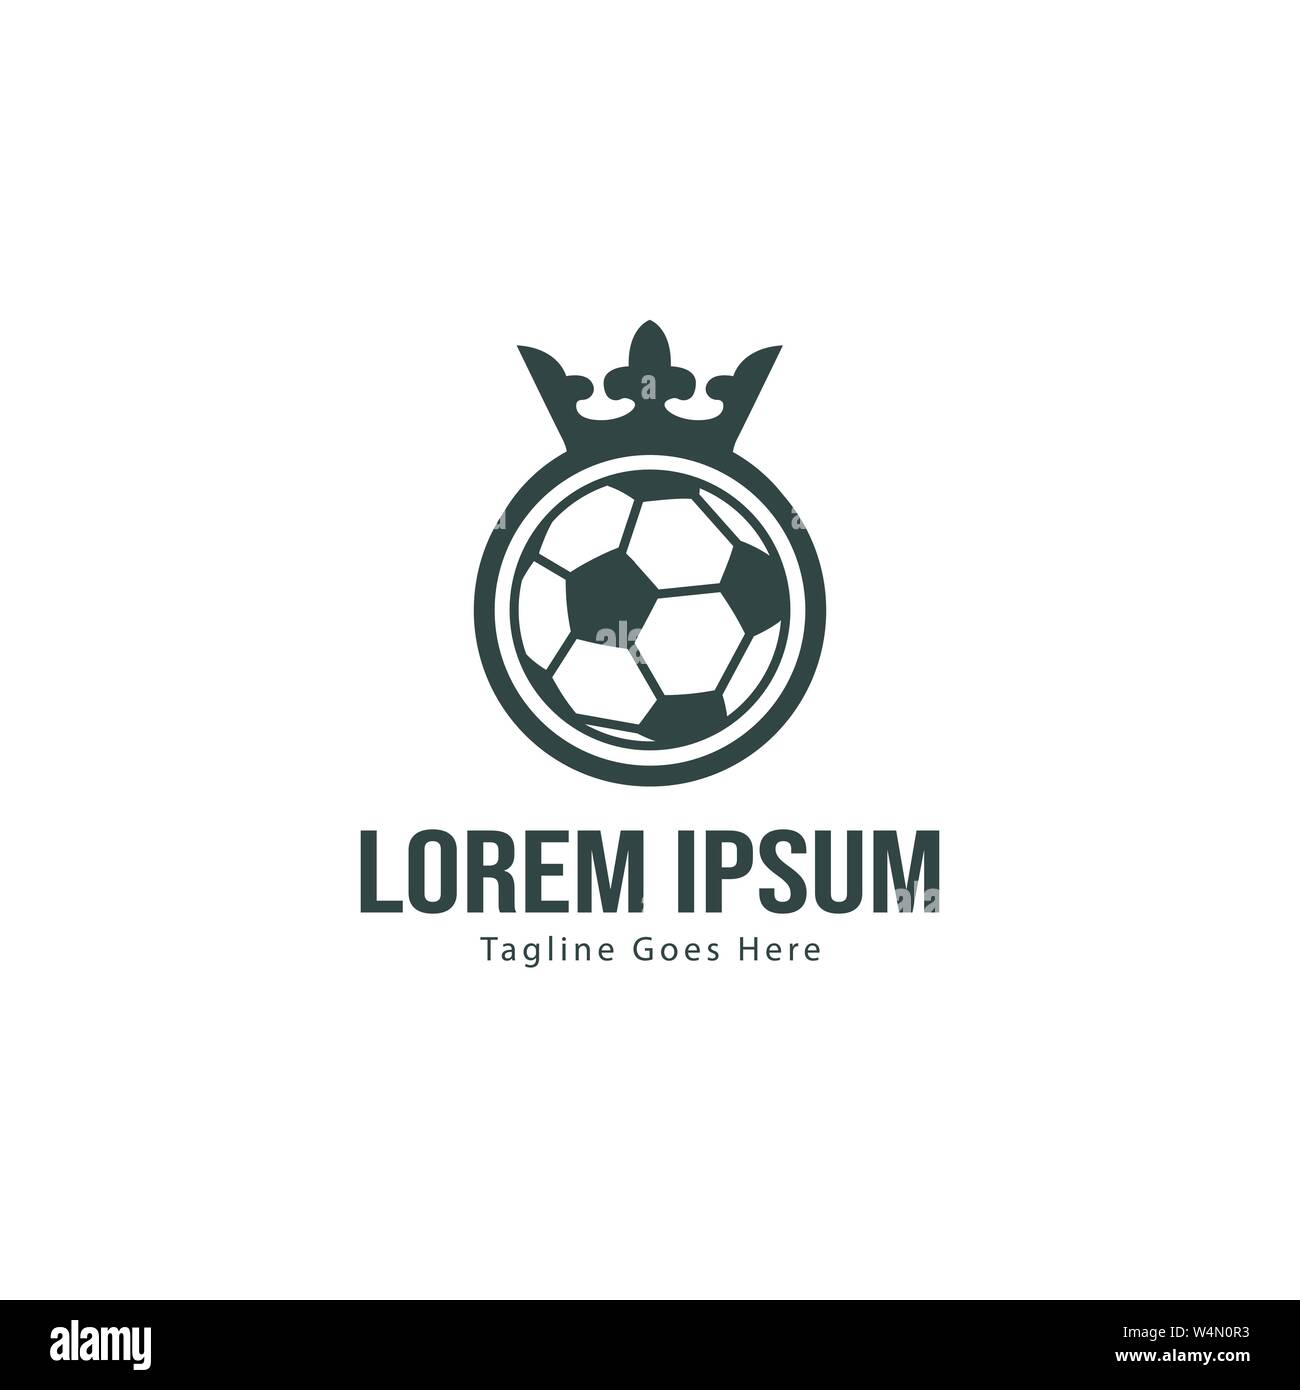 Fußball logo Template Design. Fußball-Logo mit modernen Rahmen auf weißem  Hintergrund Stock-Vektorgrafik - Alamy